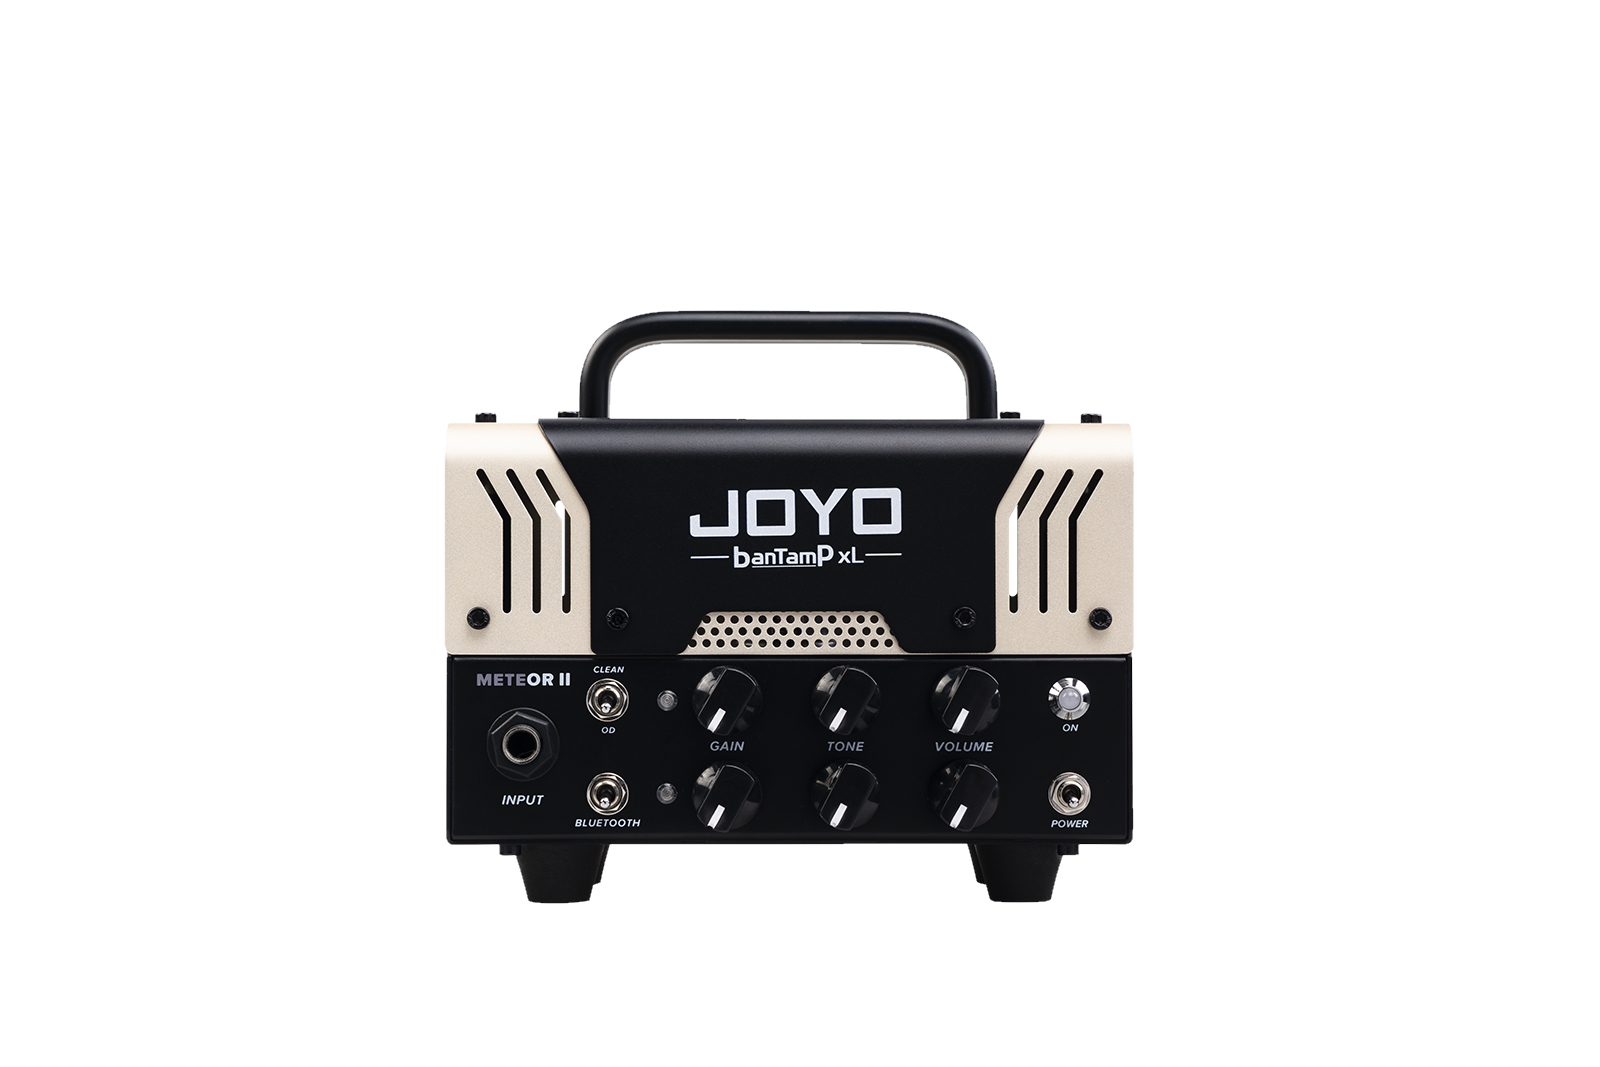 Гитарные усилители Joyo BanTamP XL METEOR-II